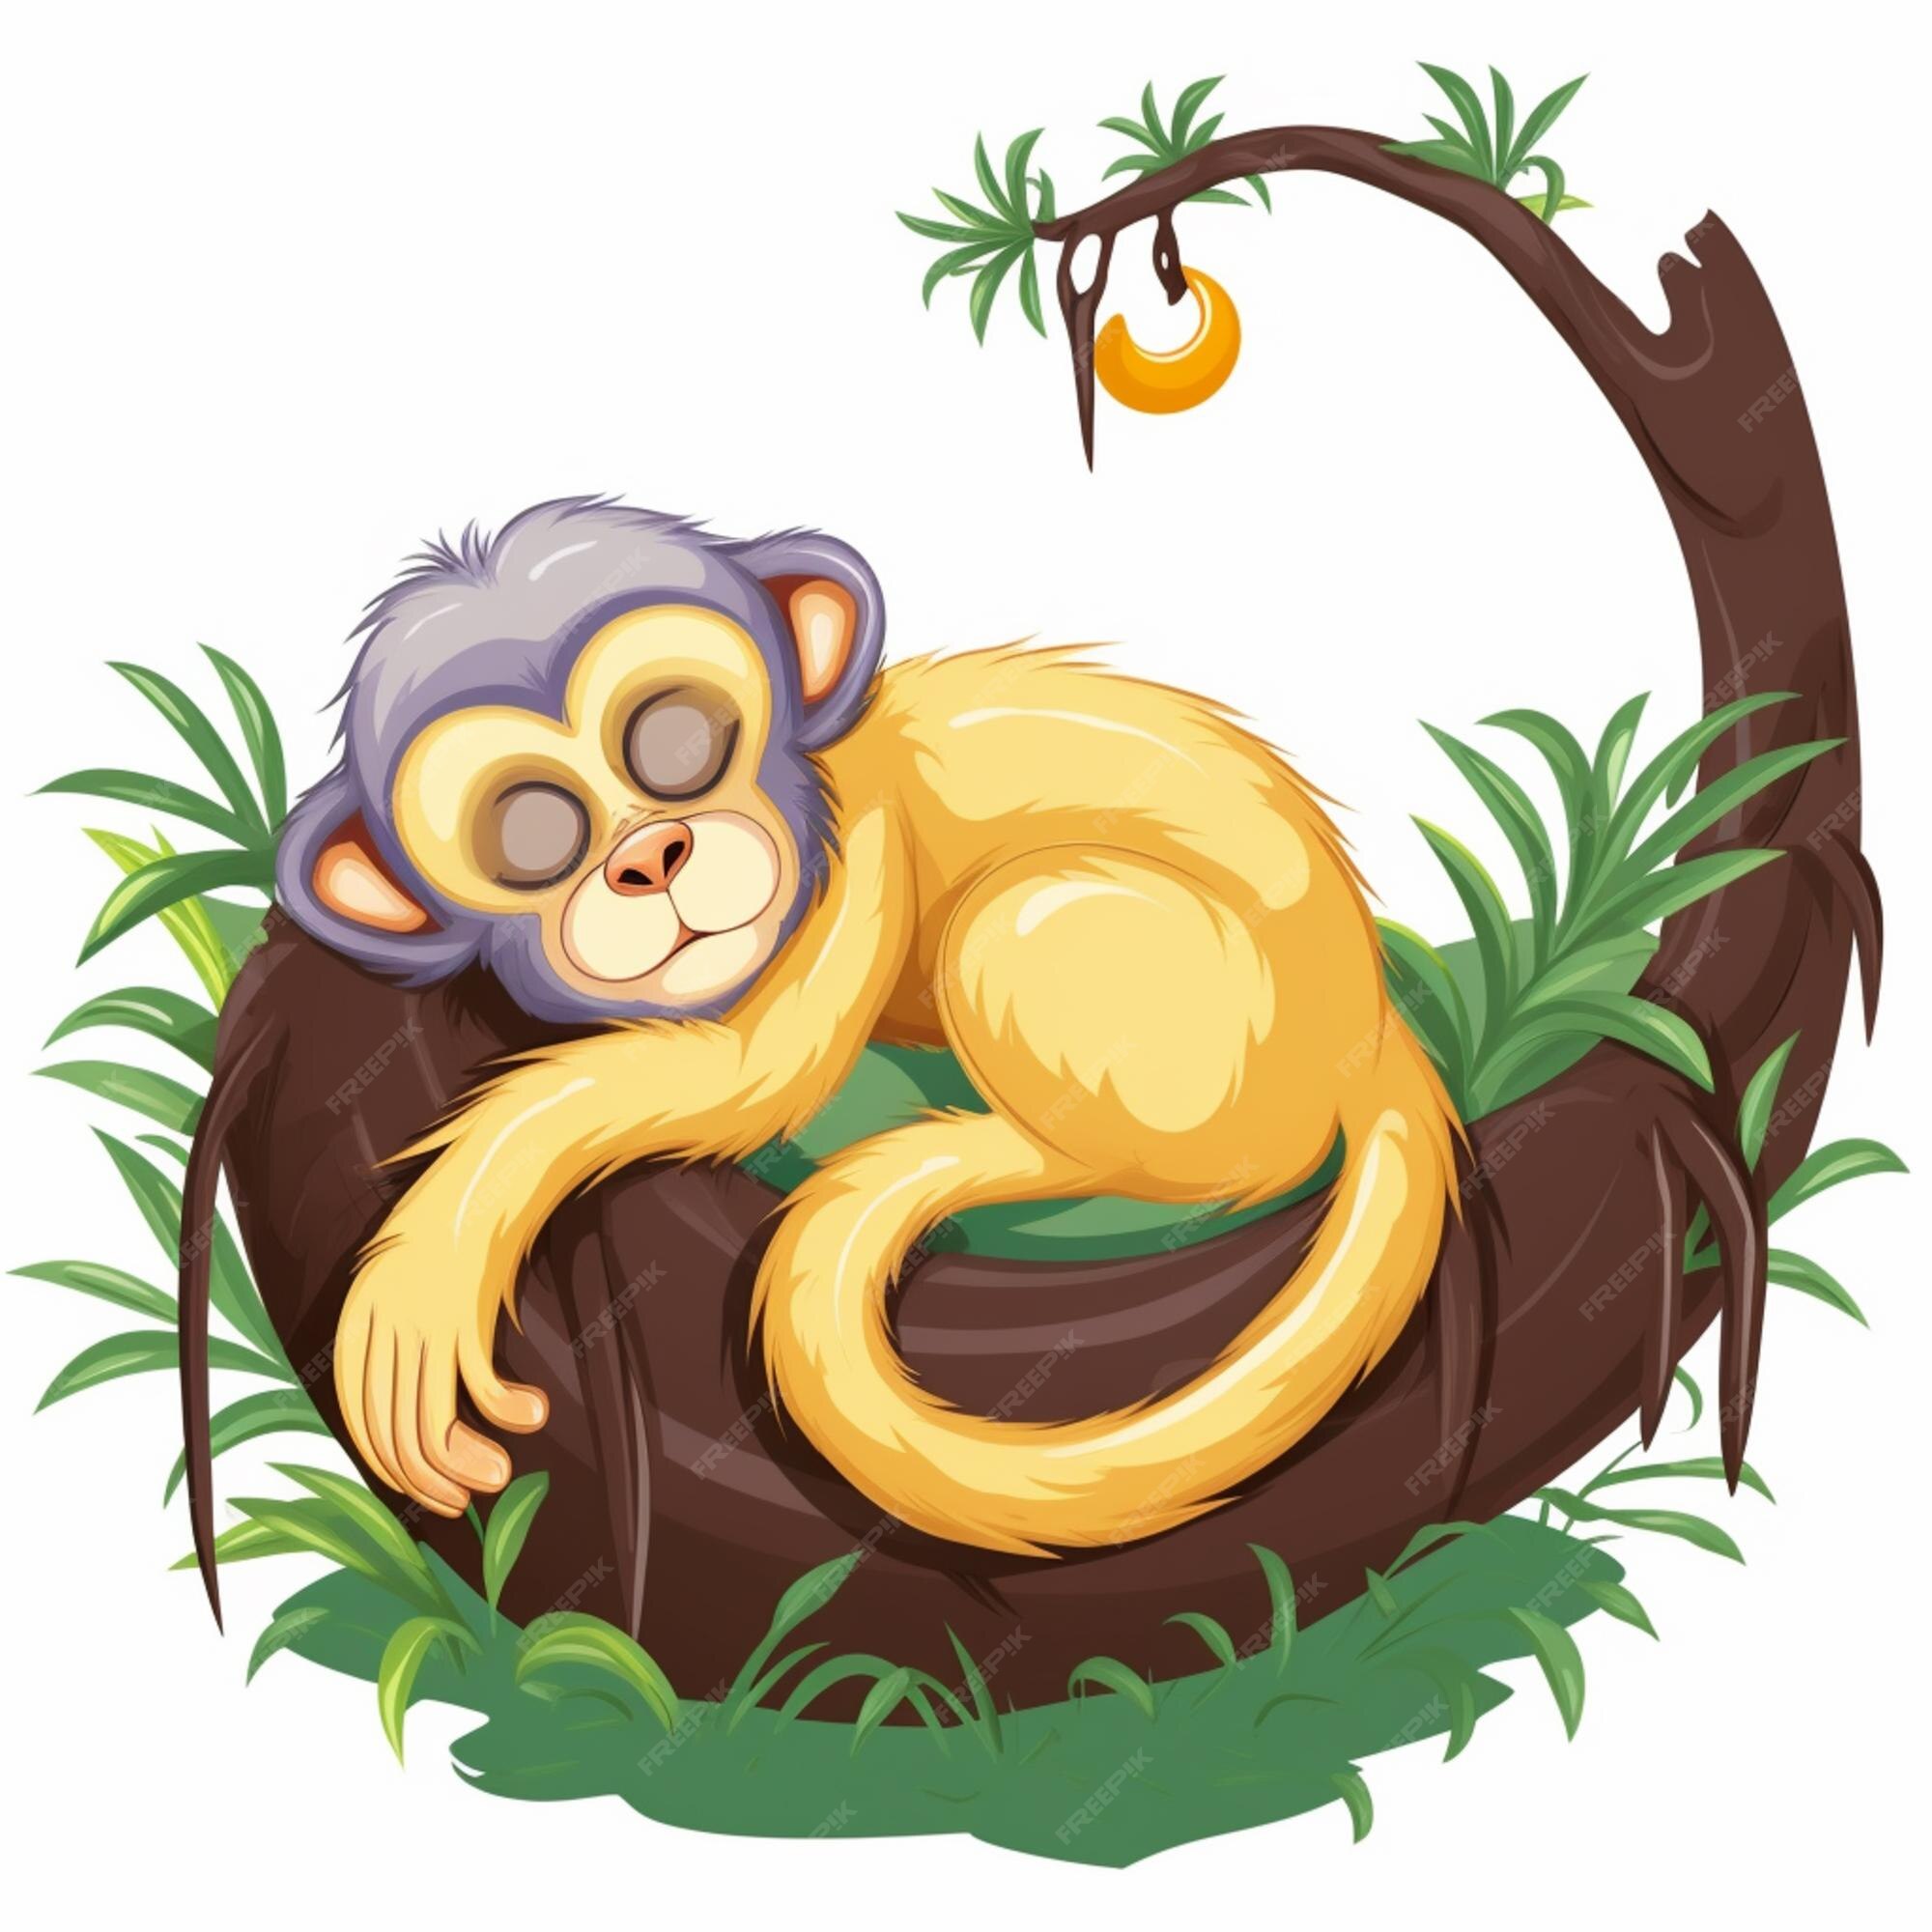 Macaco fofo dormindo na soneca na árvore isolada ilustração da